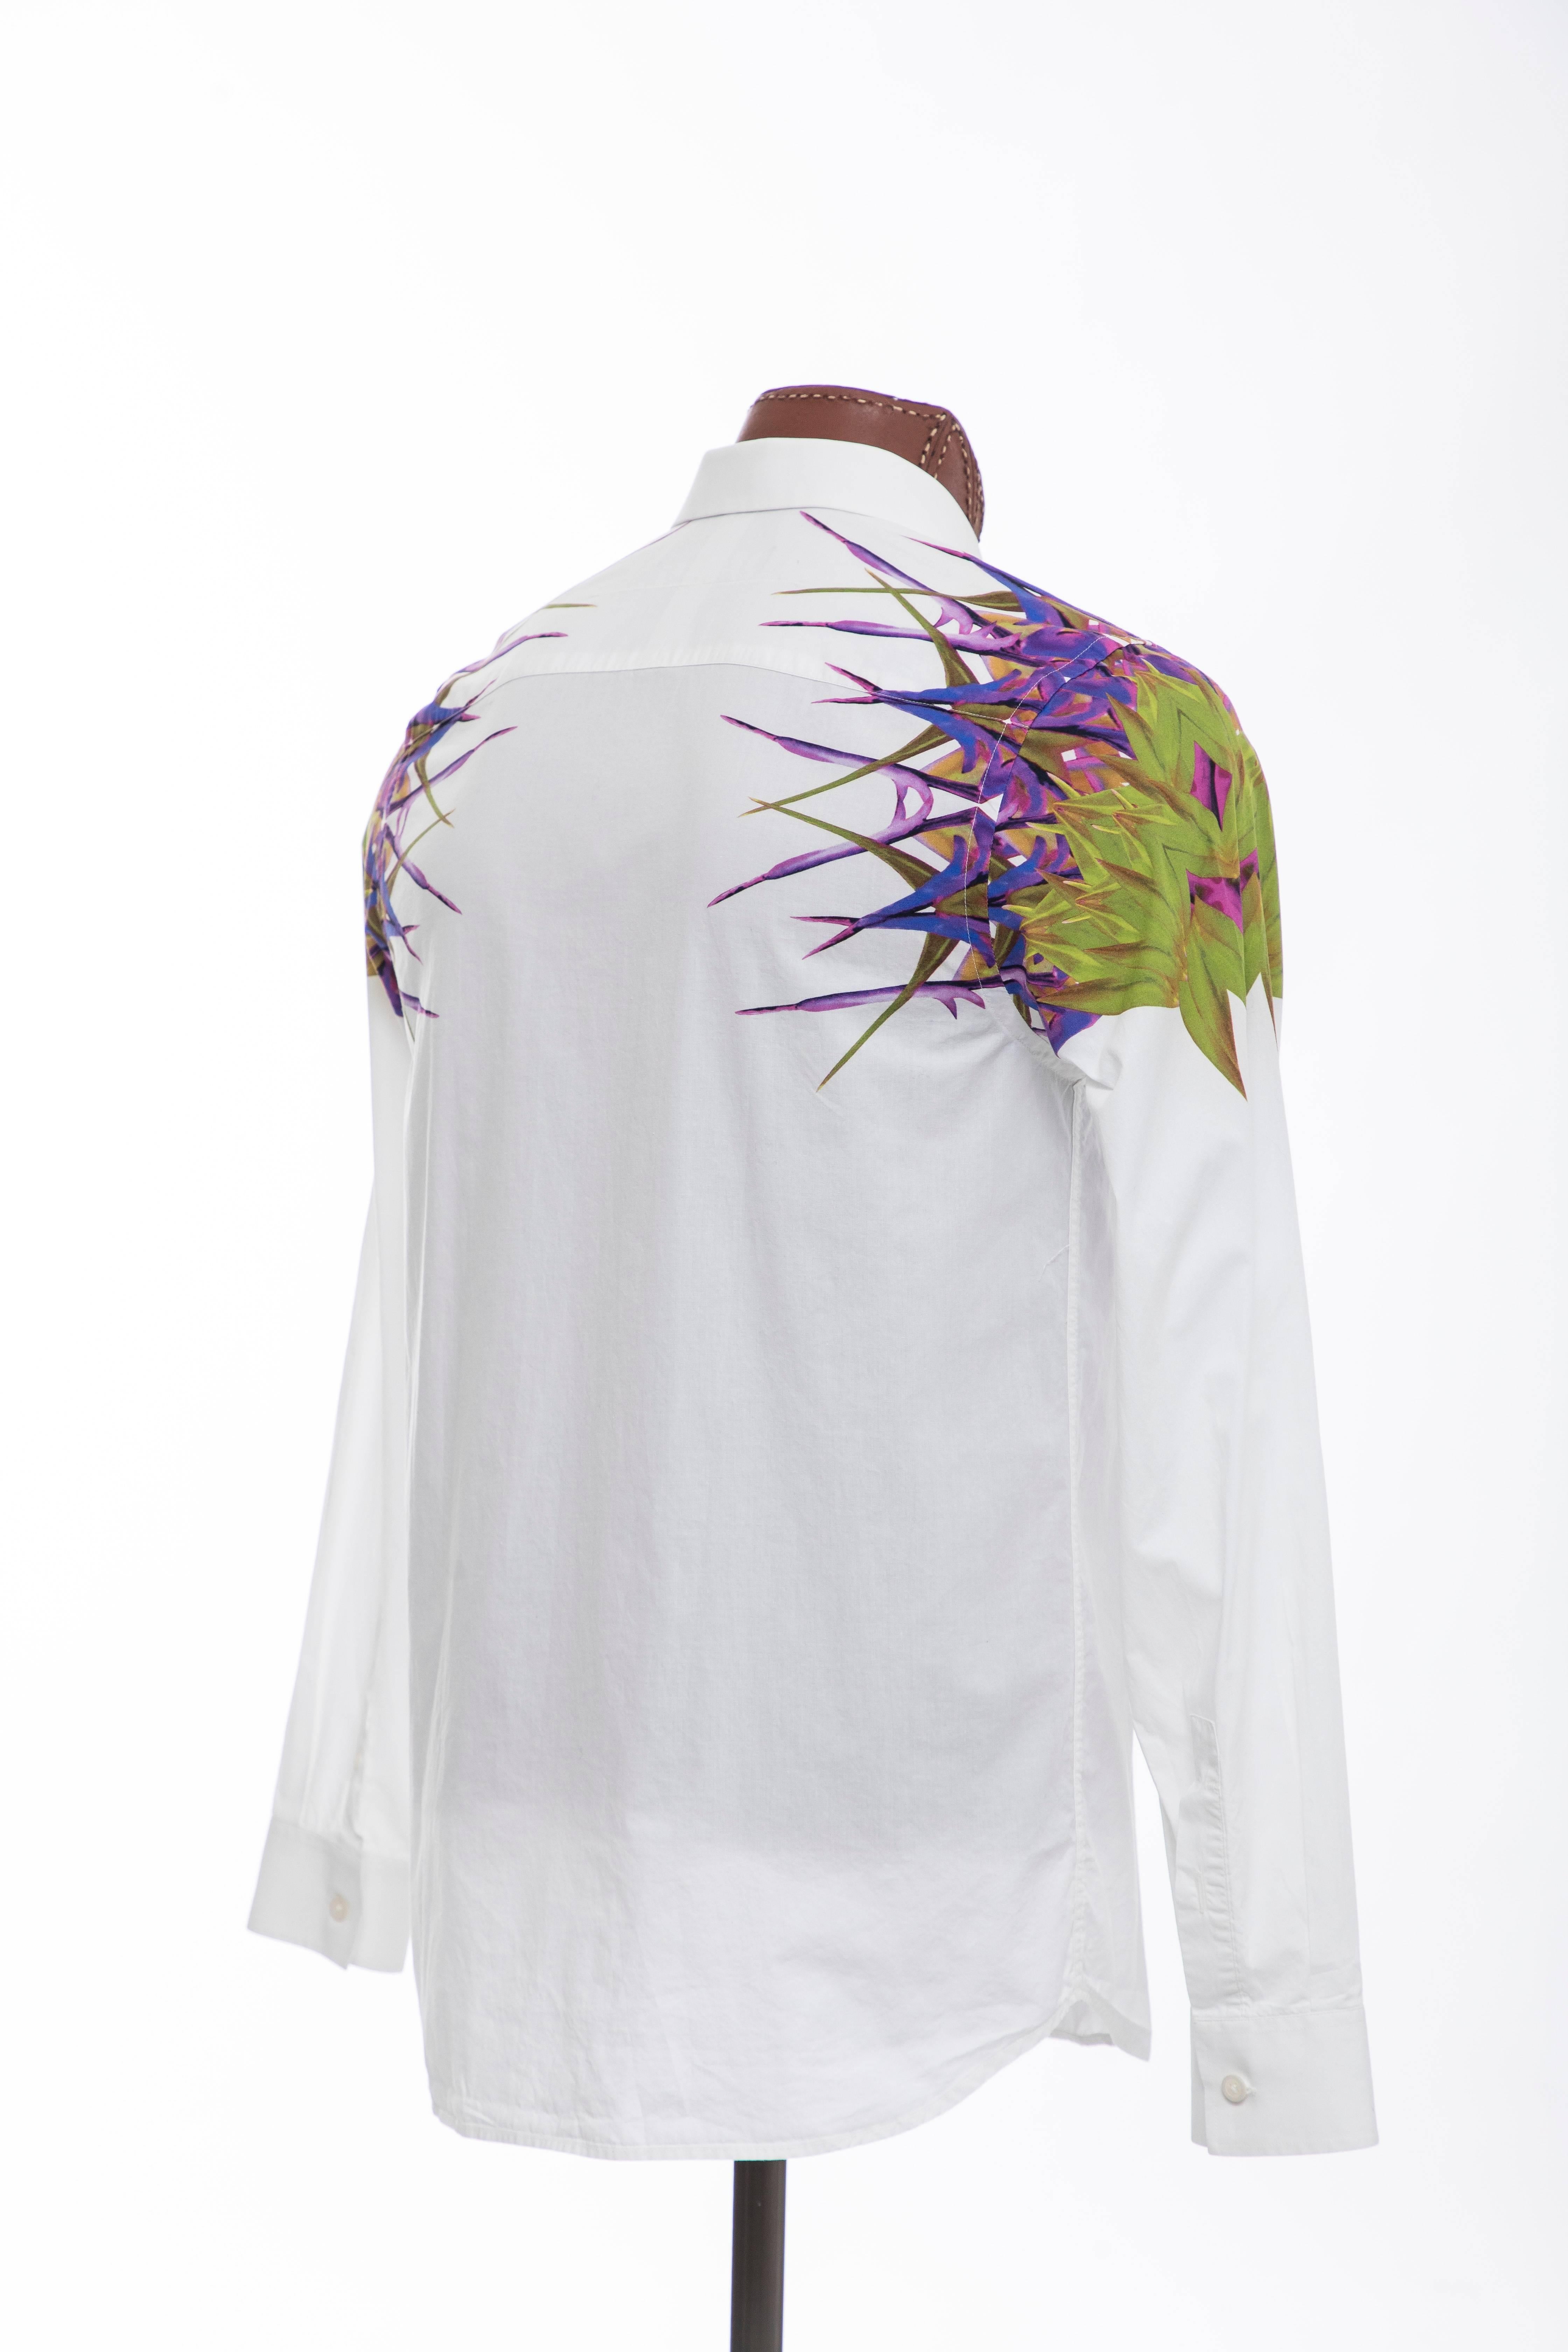 Gray Riccardo Tisci Givenchy Men's Cotton Birds Of Paradise Shirt, Spring 2012